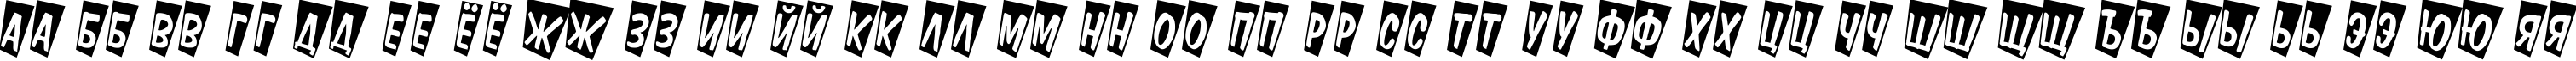 Пример написания русского алфавита шрифтом a_DomInoTitulCmTw